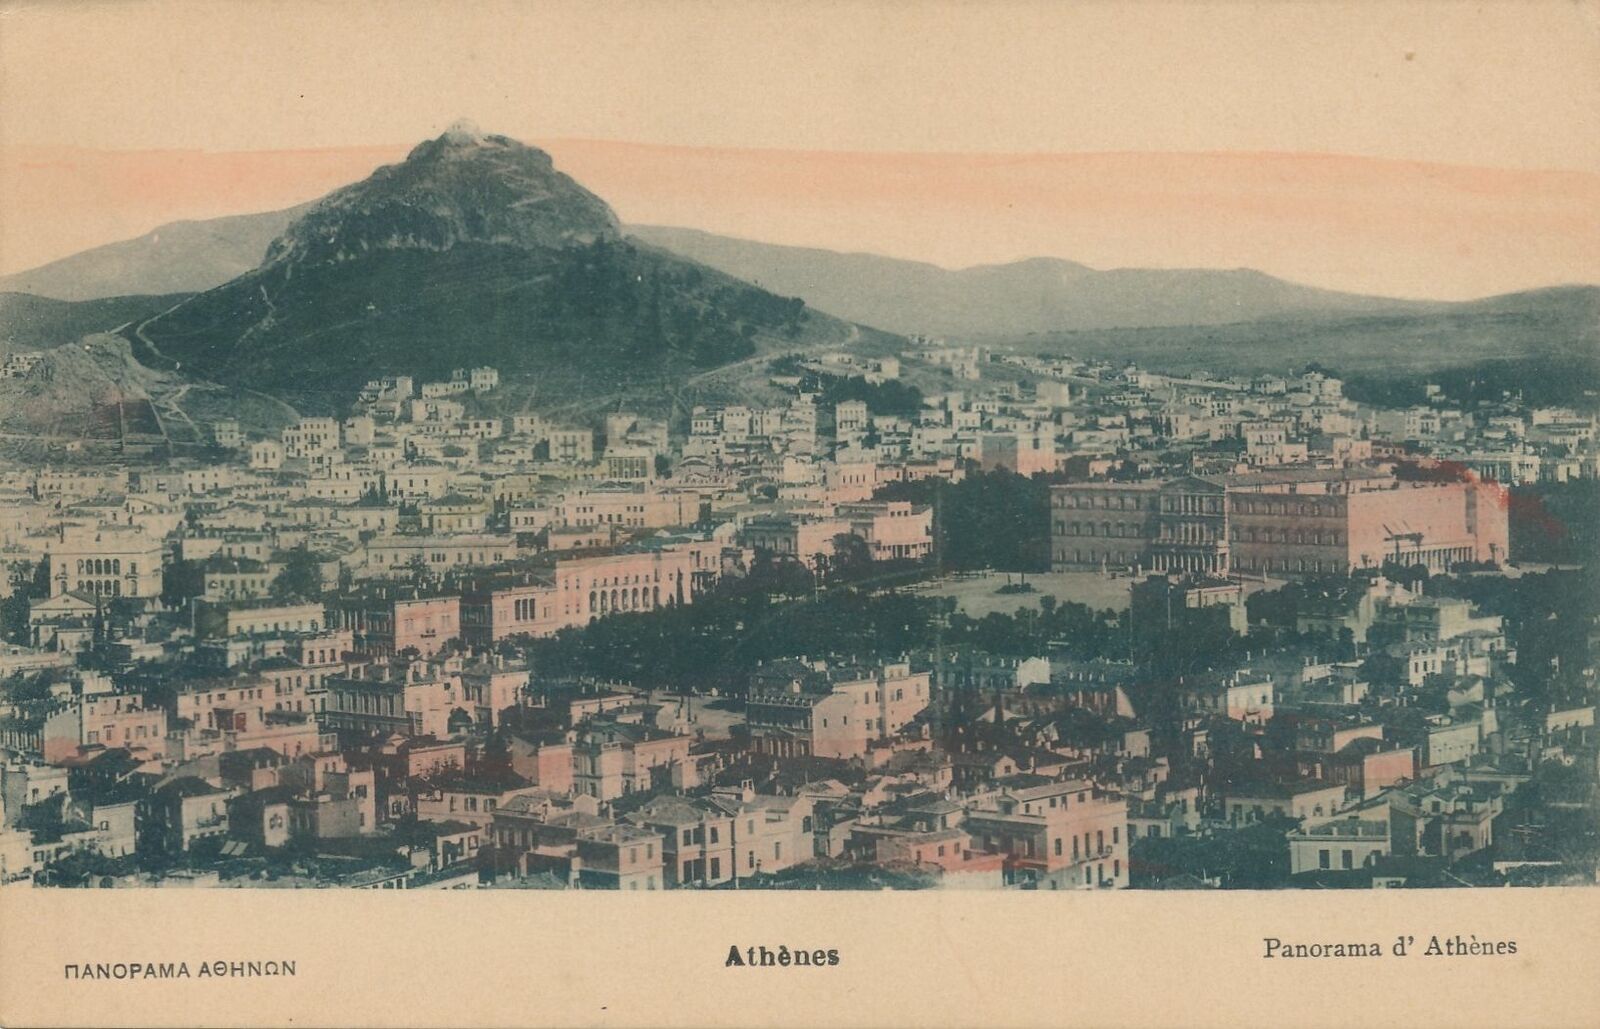 ATHENS - Panorama Athinon Athens Panorama - Greece